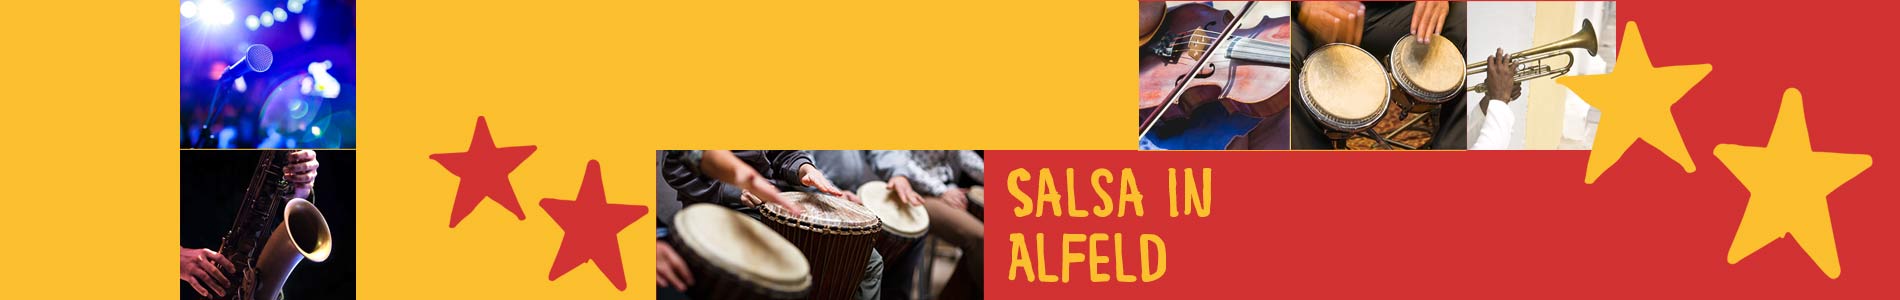 Salsa in Alfeld – Salsa lernen und tanzen, Tanzkurse, Partys, Veranstaltungen